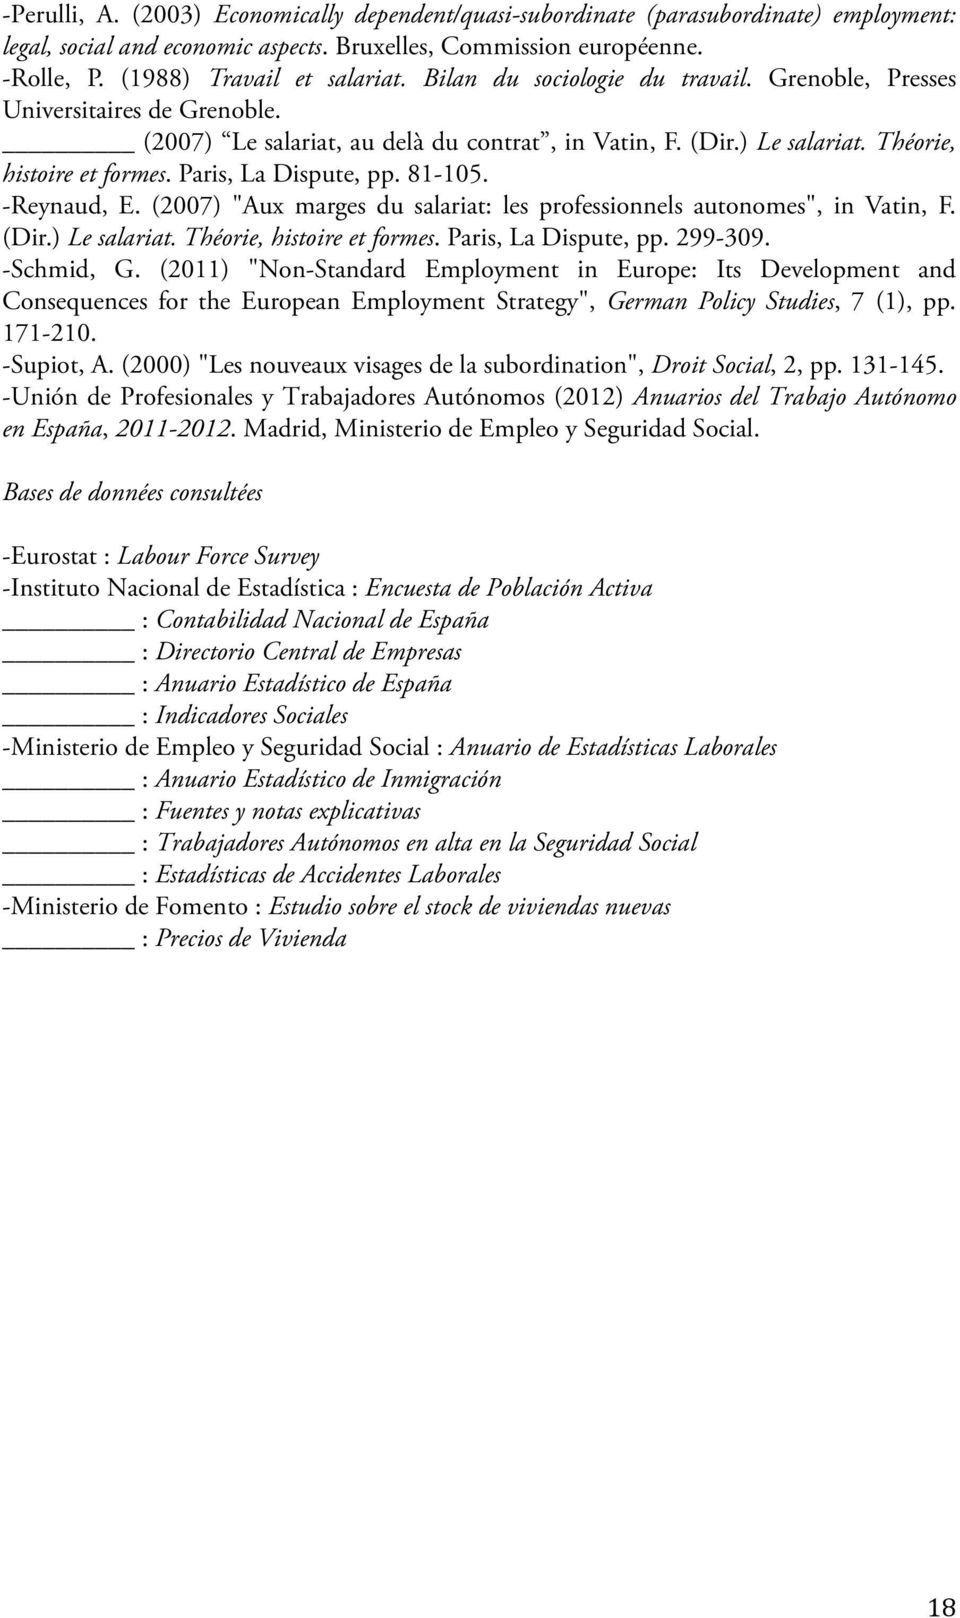 Paris, La Dispute, pp. 81-105. -Reynaud, E. (2007) "Aux marges du salariat: les professionnels autonomes", in Vatin, F. (Dir.) Le salariat. Théorie, histoire et formes. Paris, La Dispute, pp. 299-309.